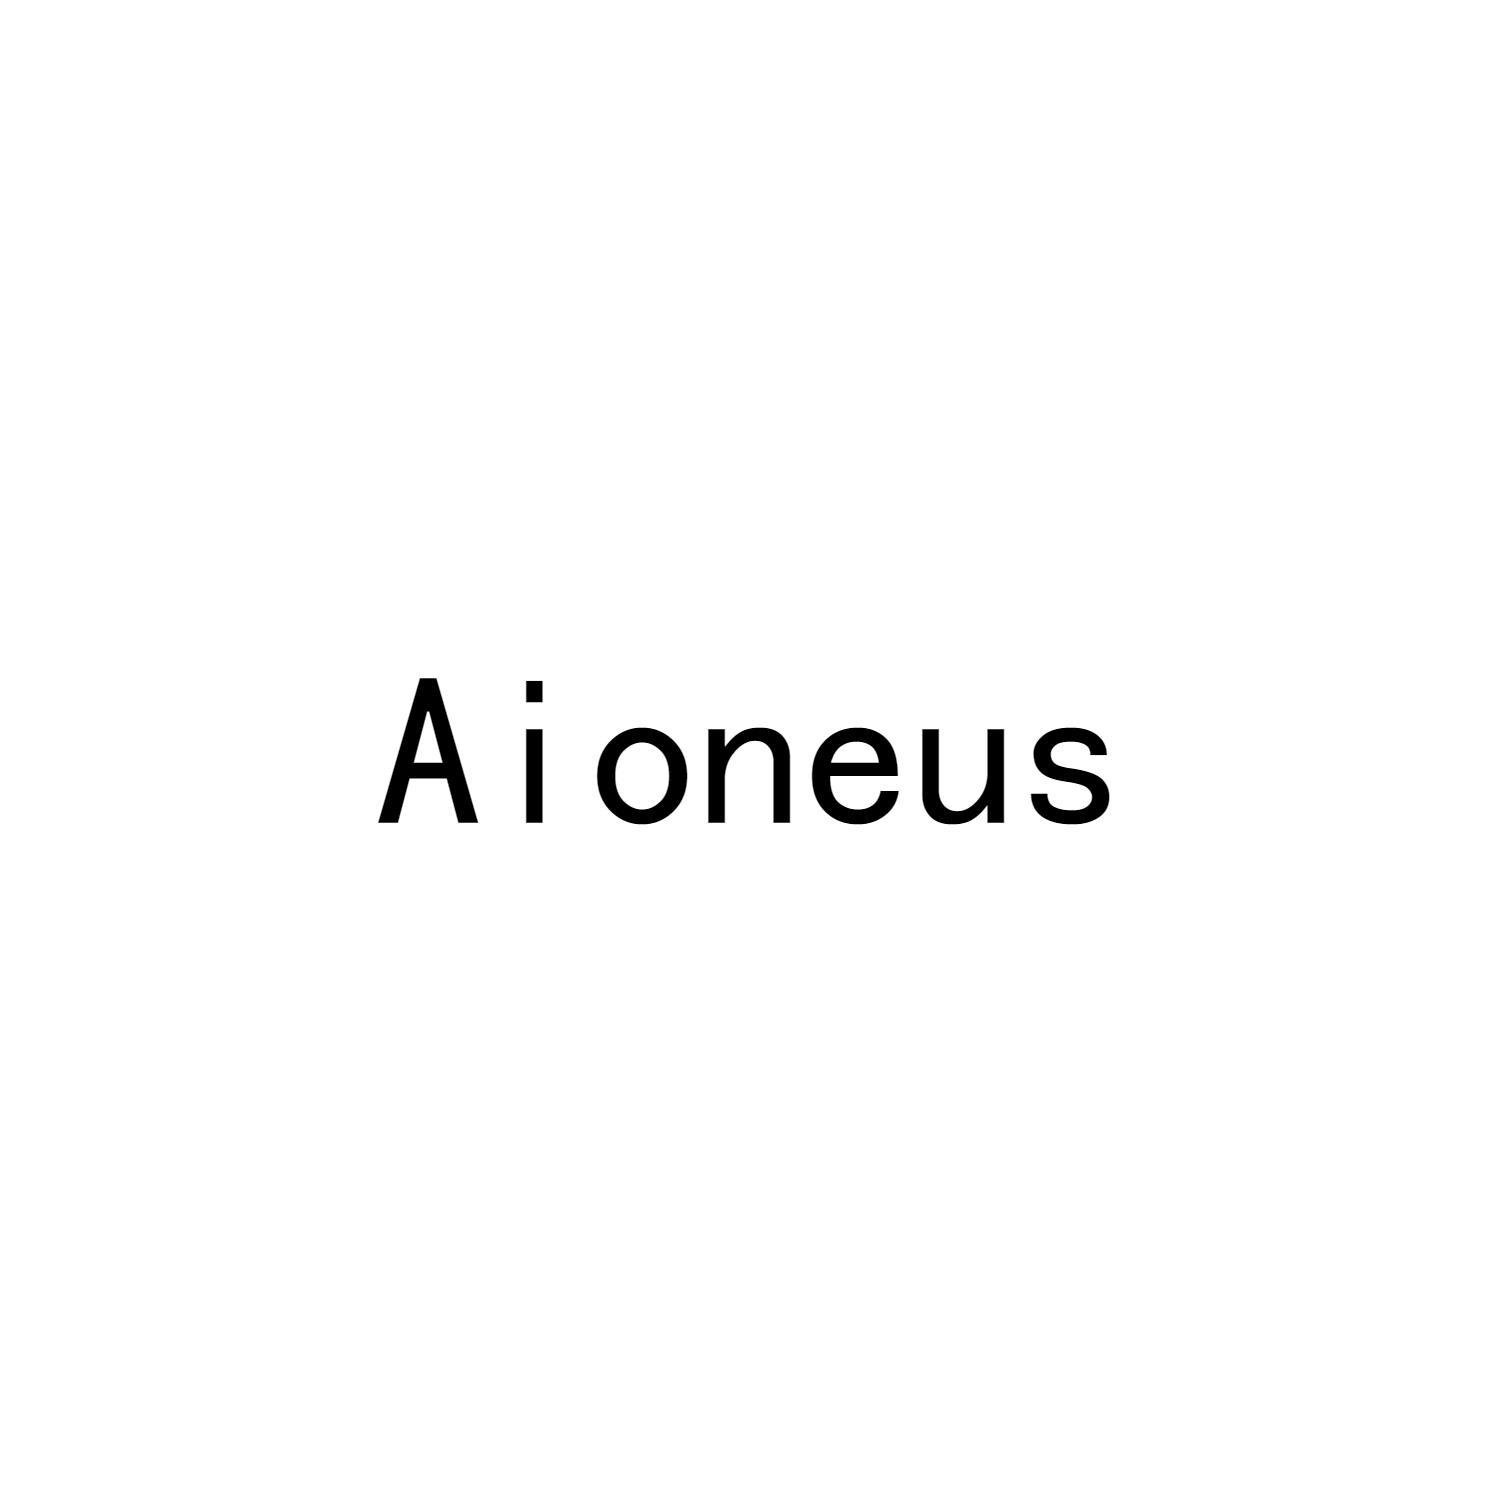 AIONEUS